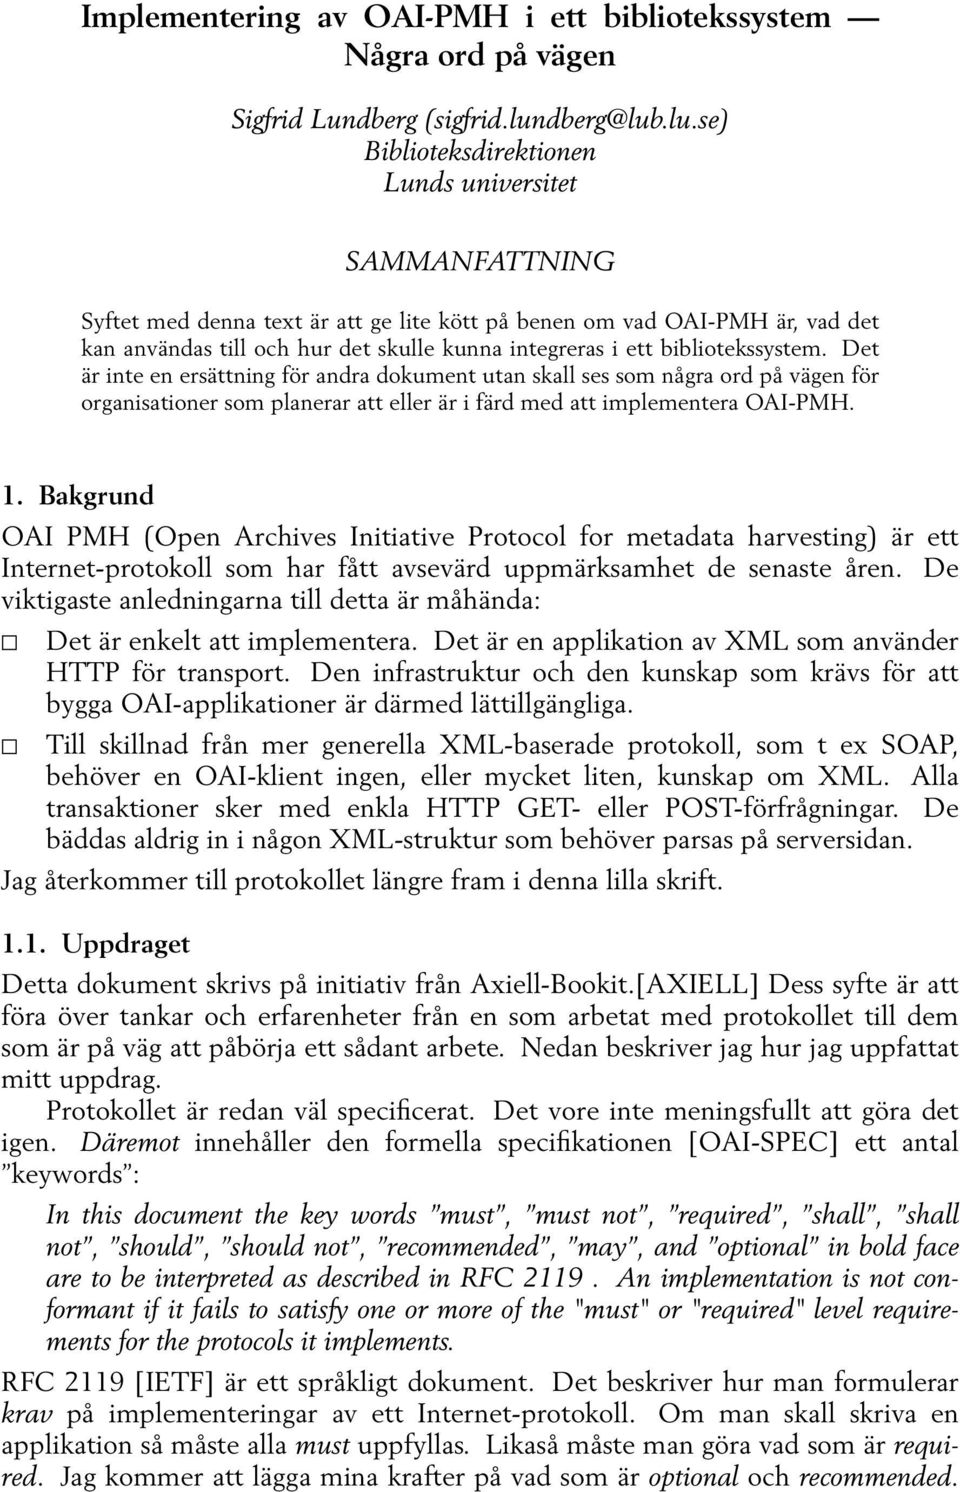 .lu.se) Biblioteksdirektionen Lunds universitet SAMMANFATTNING Syftet med denna text är att ge lite kött på benen om vad OAI-PMH är, vad det kan användas till och hur det skulle kunna integreras i